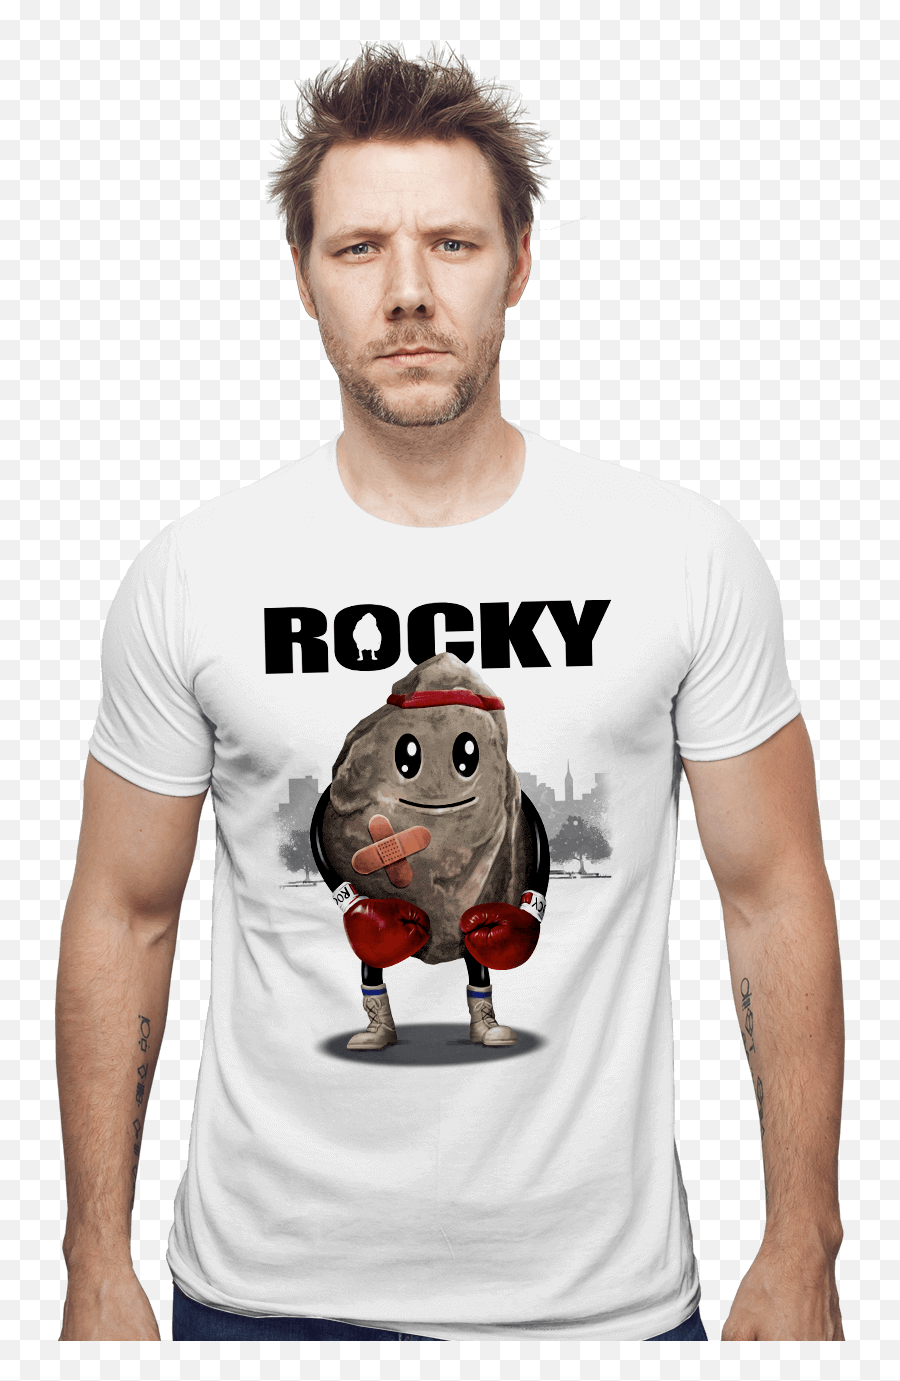 Rocky Balboa Png - Rockyt Shirts 3135941 Vippng,Rocky Balboa Png